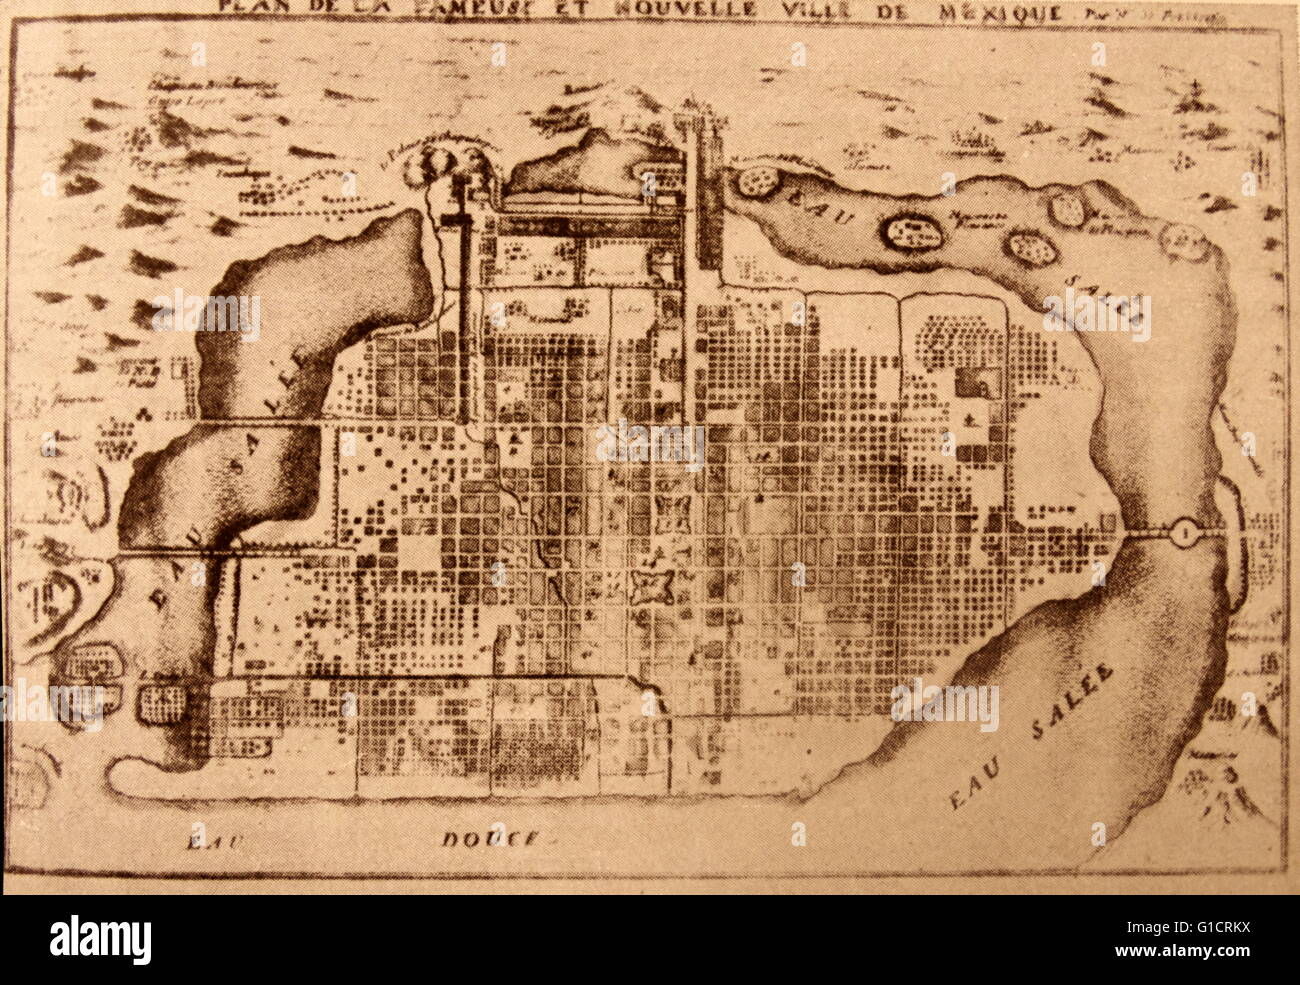 Carte de la ville de Mexico 1715 contrôlée espagnole Banque D'Images